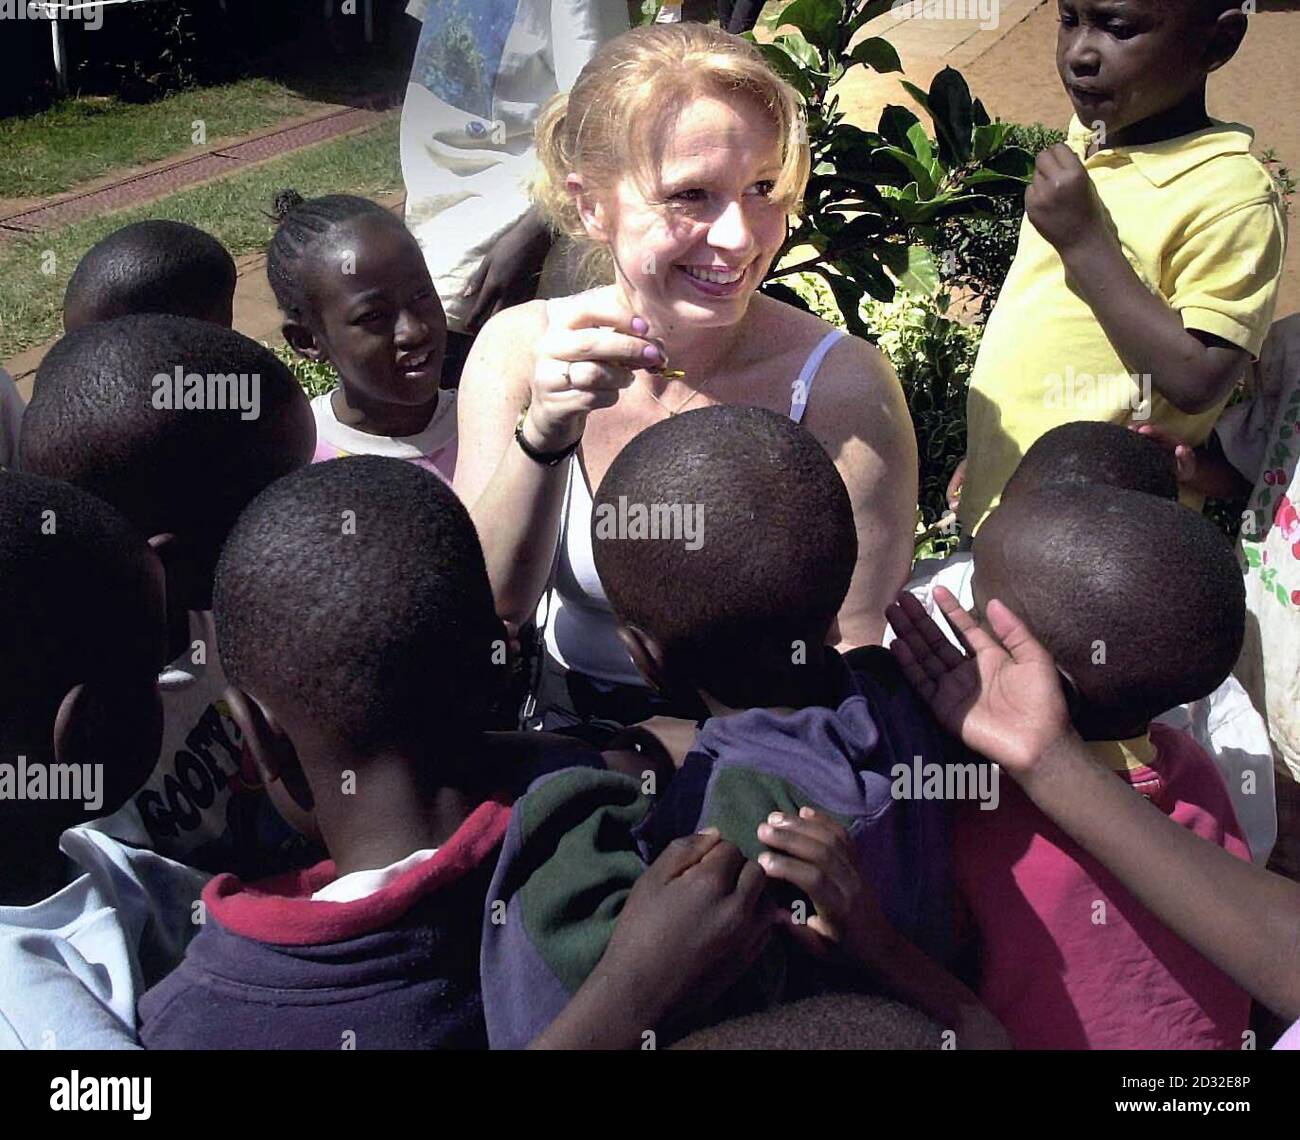 Debbie Richards aus Marlborough, Wiltshire, gibt ihr Osterwochenende auf, um HIV-positiven Waisenkindern in Nairobi, Kenia, ein wenig Glück zu bringen. *Debbie, die als Stewardess von British Airways arbeitet, war eine von 20 Mitarbeitern der Fluggesellschaft, die eine Osterparty für 79 kleine Kinder im Nyumbani-Waisenhaus veranstaltete. Das in Nairobi ansässige Waisenhaus kümmert sich nur um HIV-positive Waisen, die entweder ihre Eltern an AIDS verloren haben oder allein zur Selbsthilfe und Bekämpfung der Krankheit verlassen wurden. Stockfoto